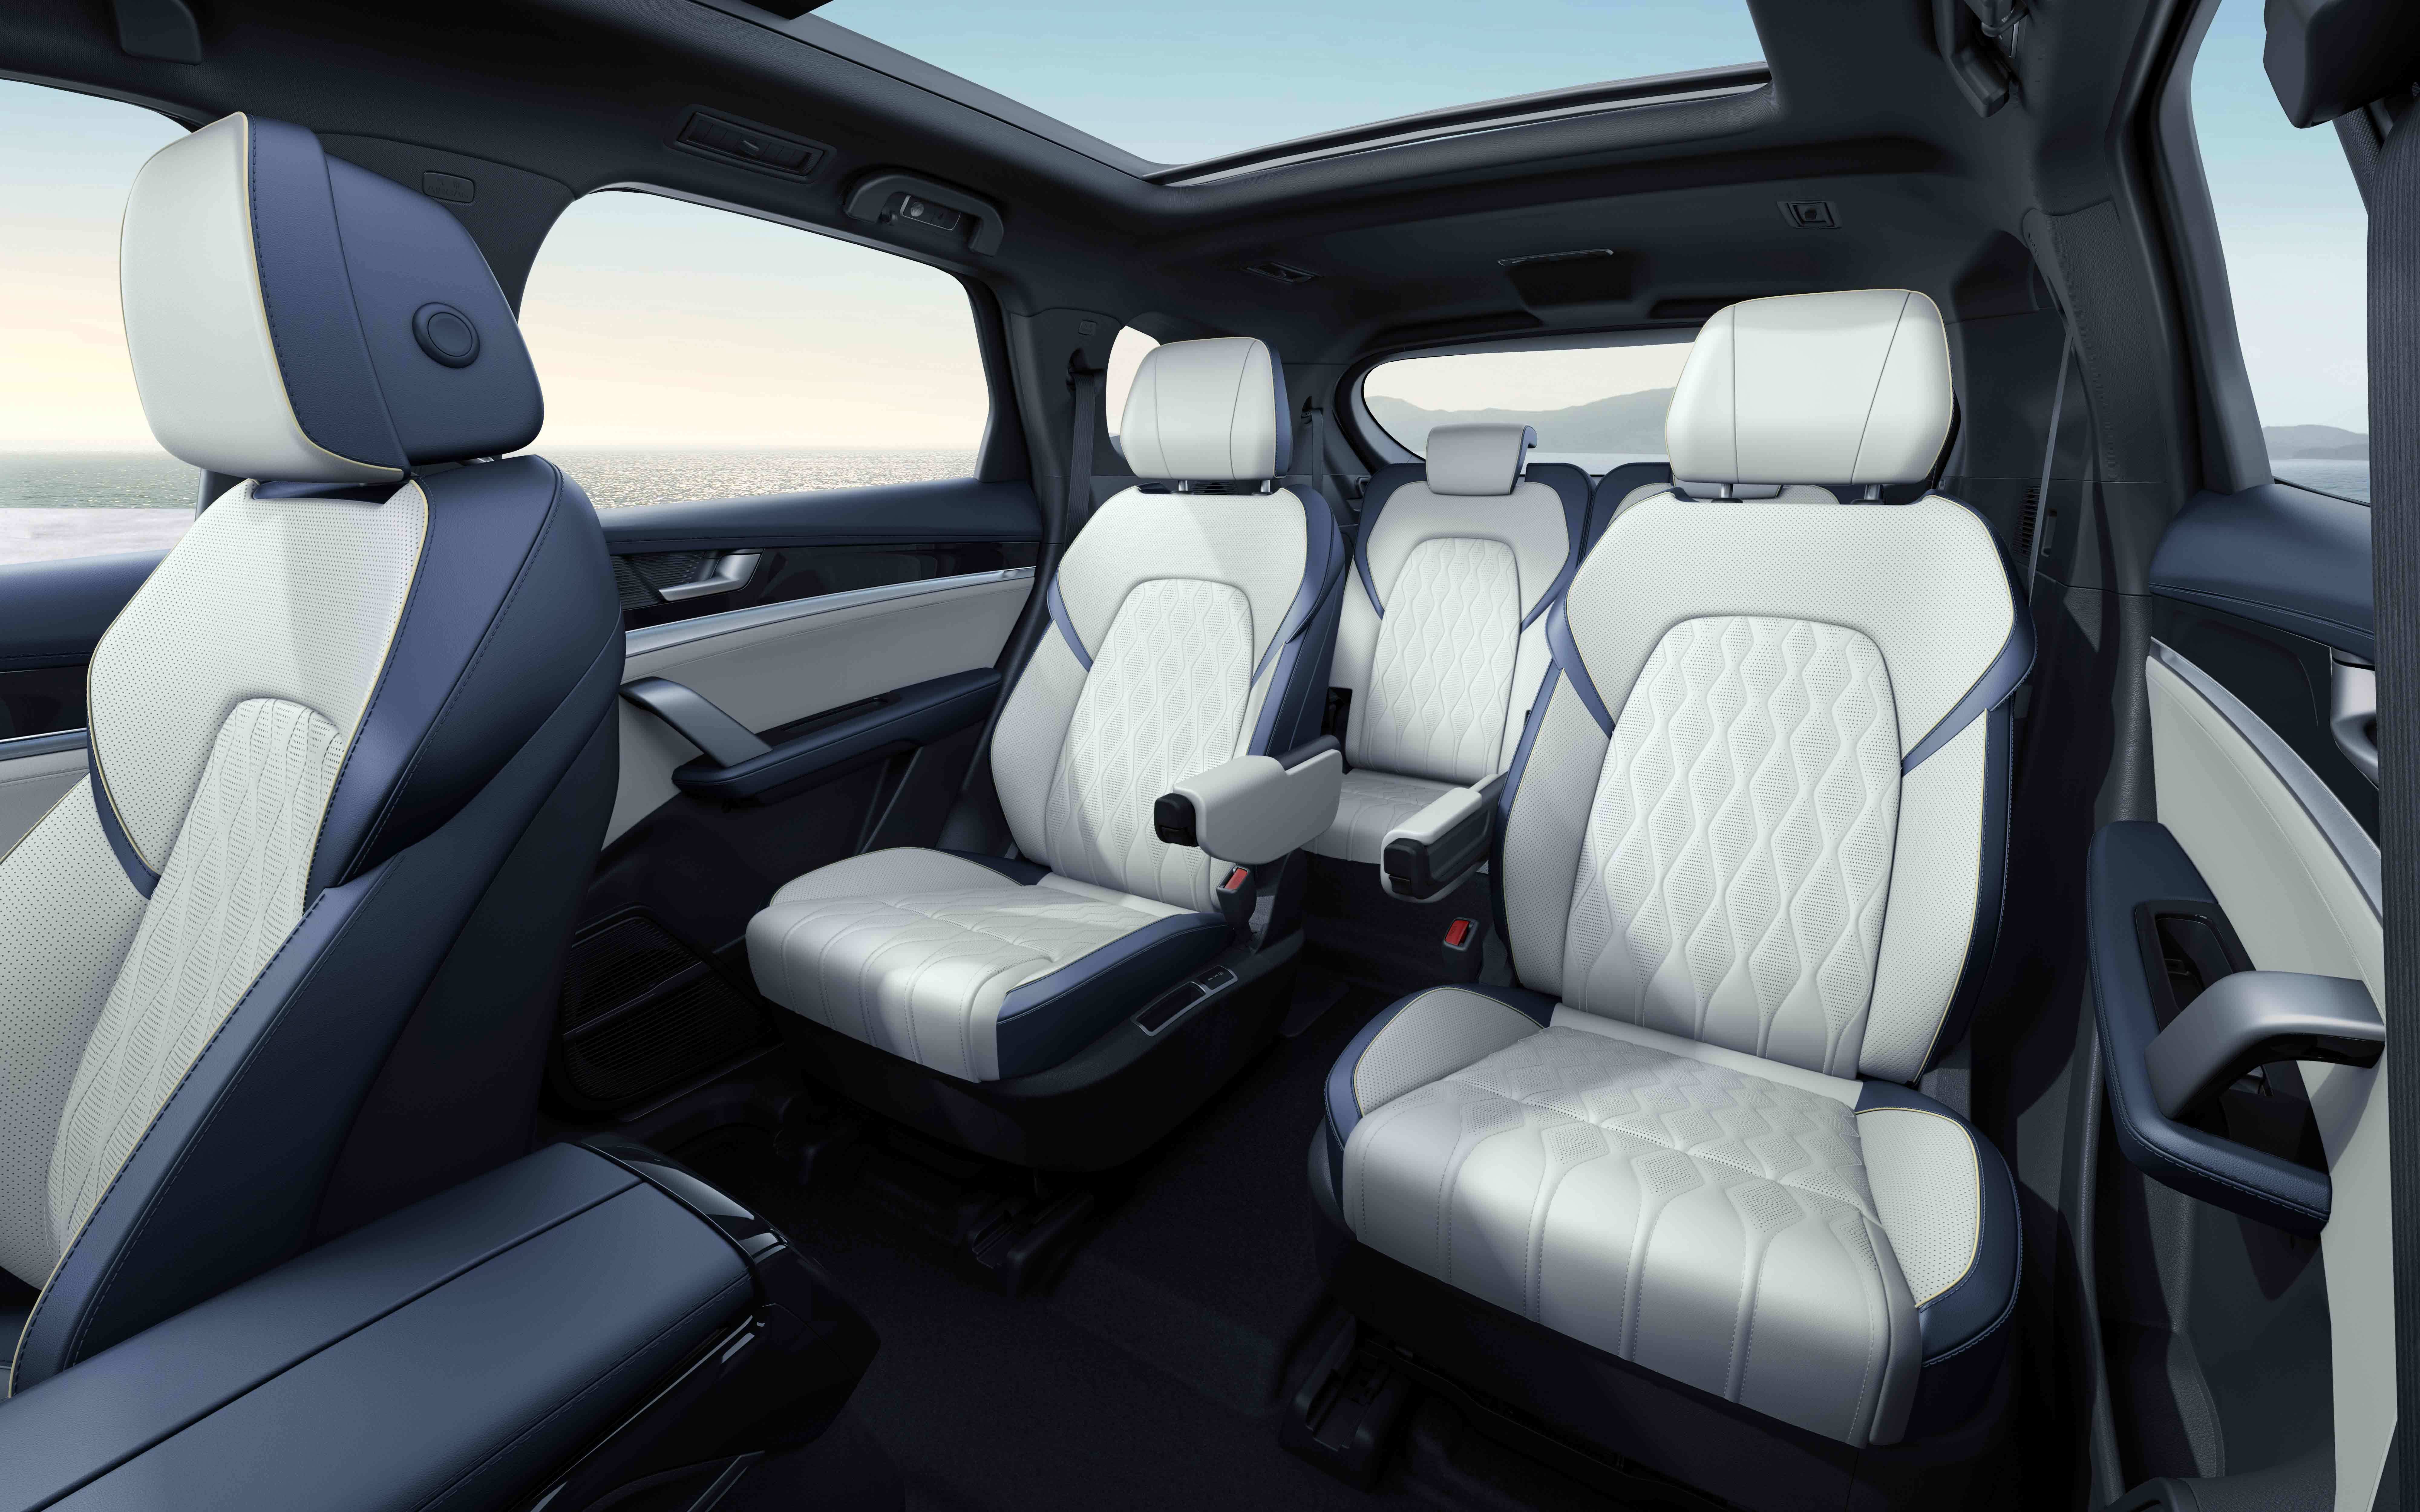 2022款比亚迪唐EV开启预售 预售价28.28-34.28万元